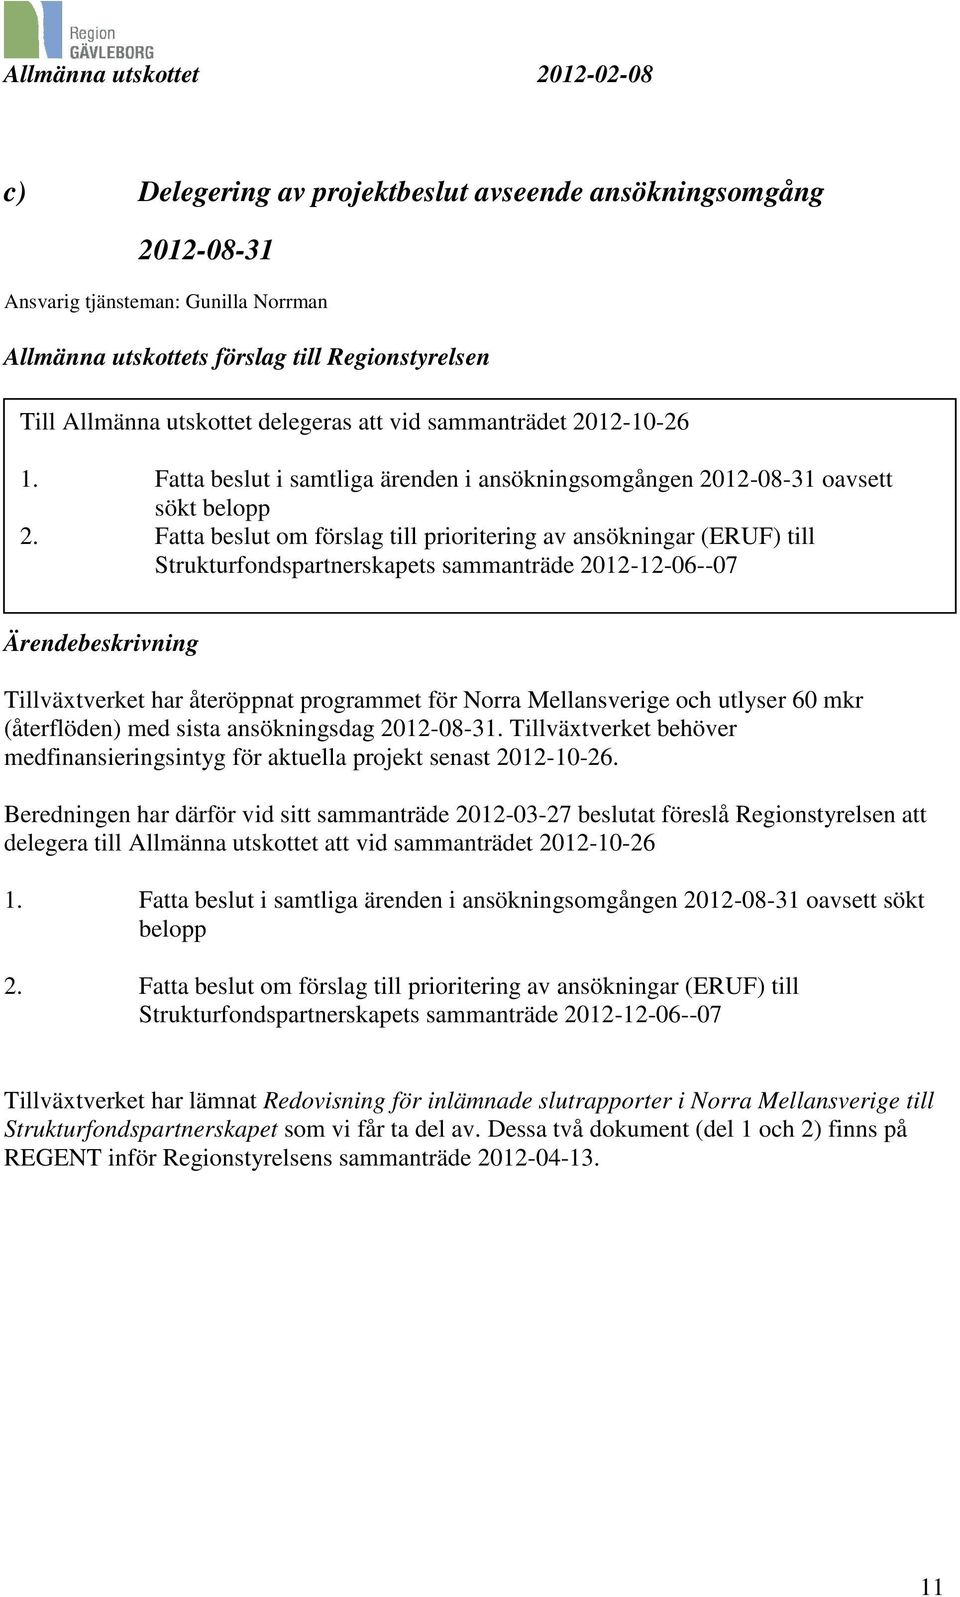 Fatta beslut om förslag till prioritering av ansökningar (ERUF) till Strukturfondspartnerskapets sammanträde 2012-12-06--07 Ärendebeskrivning Tillväxtverket har återöppnat programmet för Norra